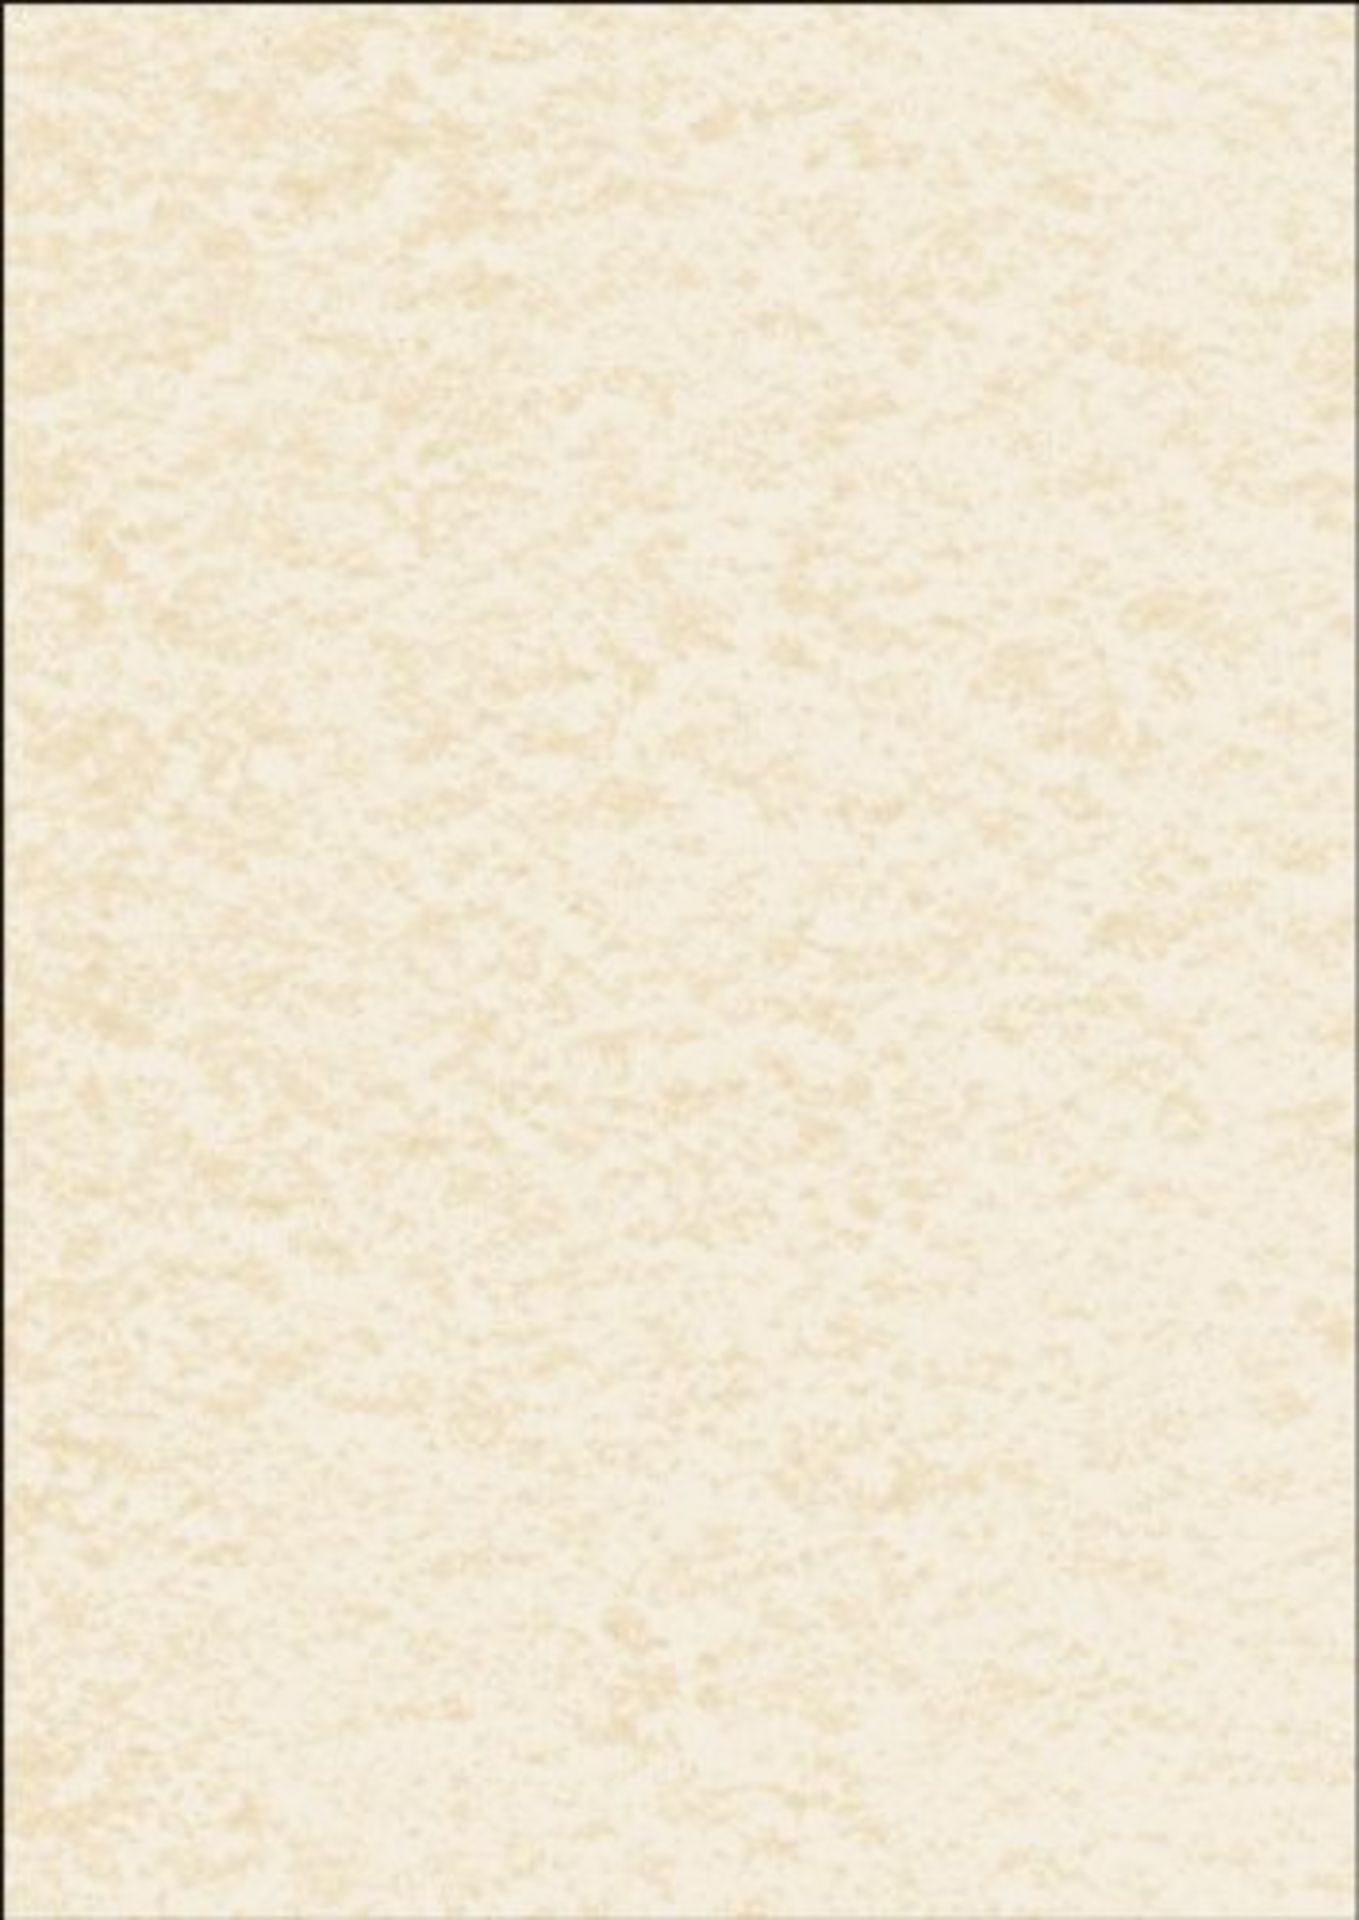 SIGEL DP655 Carta da Lettere / Carta strutturata, pergamena champagne, A4, 200 g, 50 f